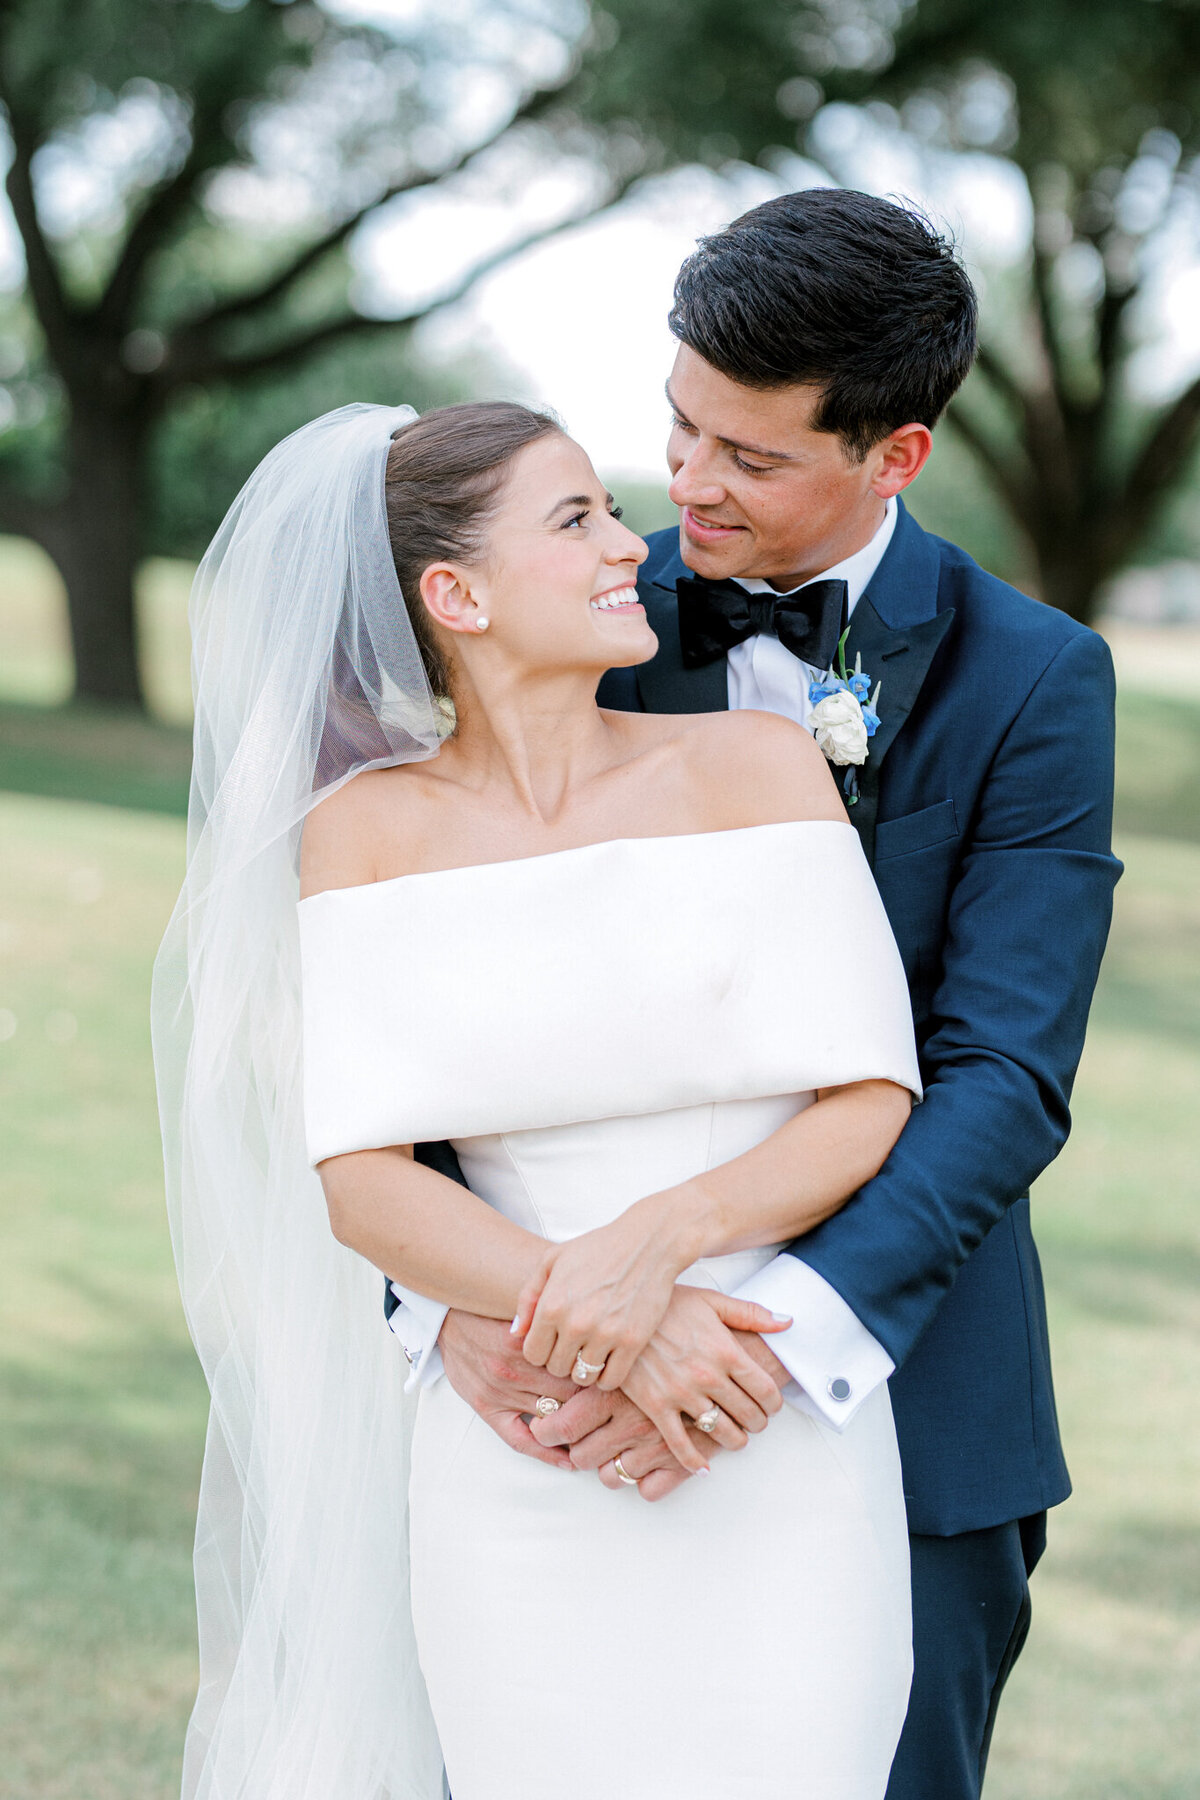 Annie & Logan's Wedding | Dallas Wedding Photographer | Sami Kathryn Photography-174